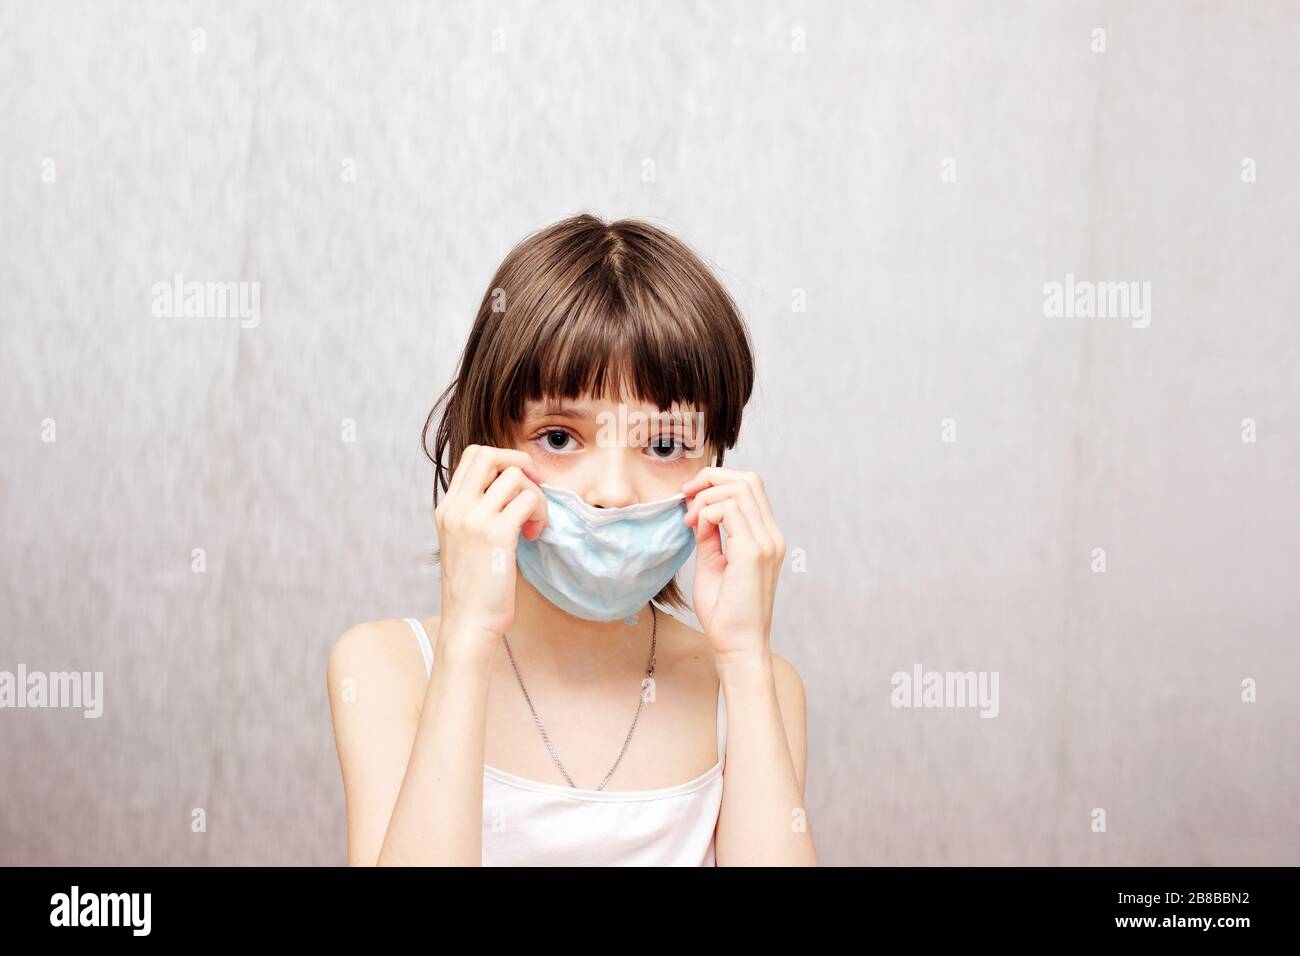 La fille ajuste son masque médical protecteur sur son visage. Banque D'Images